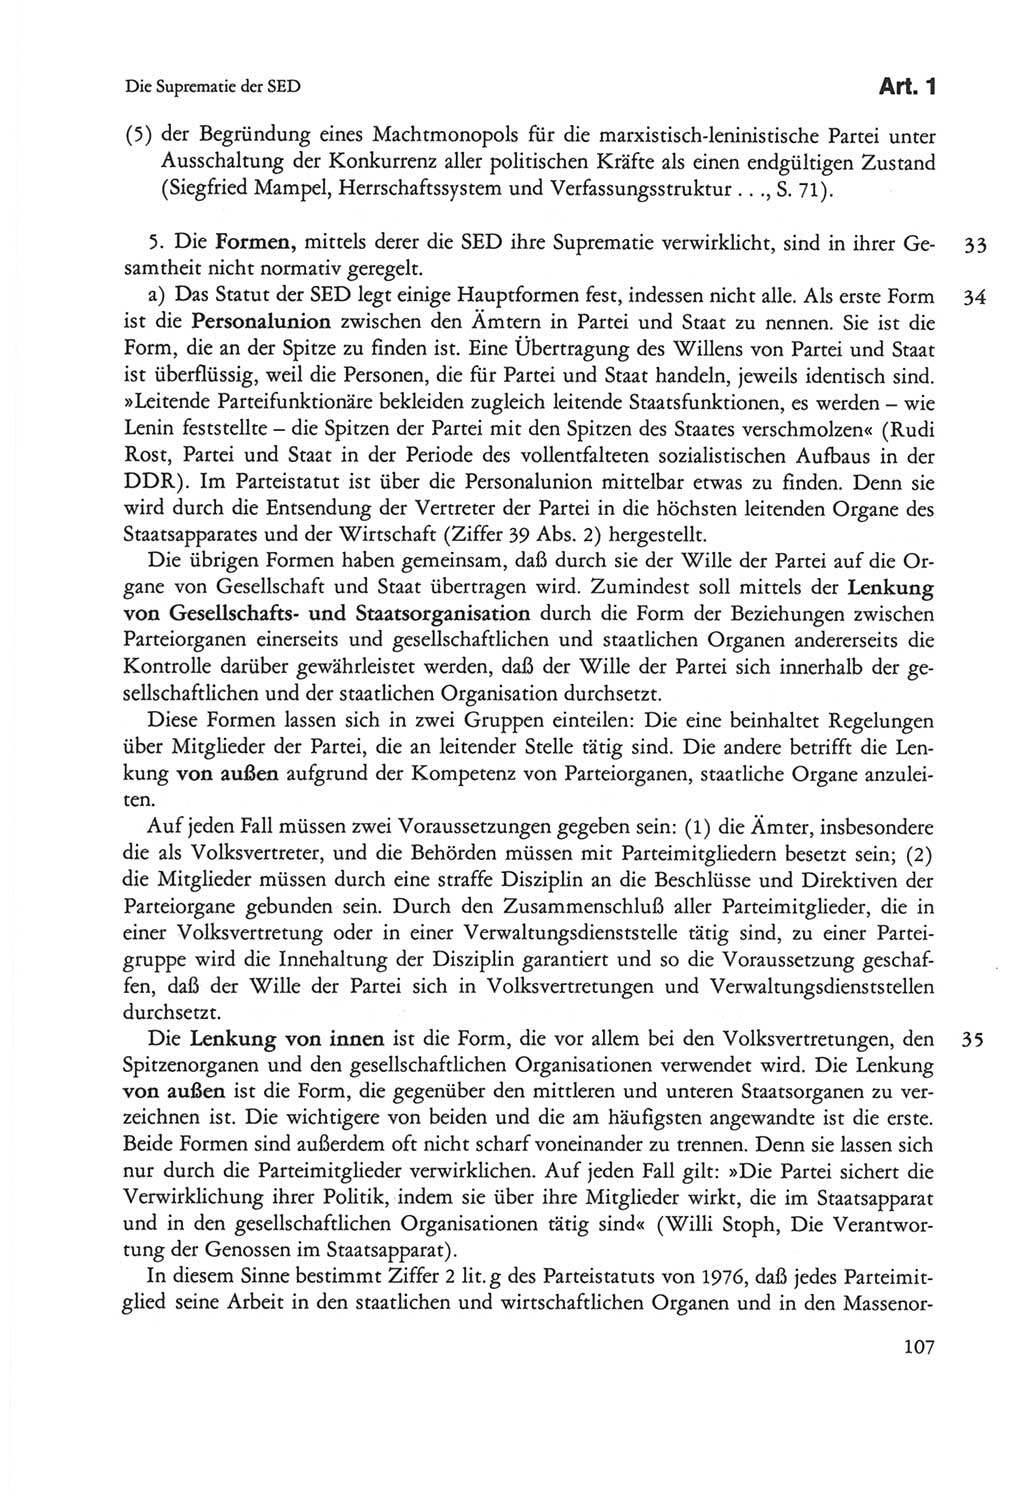 Die sozialistische Verfassung der Deutschen Demokratischen Republik (DDR), Kommentar mit einem Nachtrag 1997, Seite 107 (Soz. Verf. DDR Komm. Nachtr. 1997, S. 107)